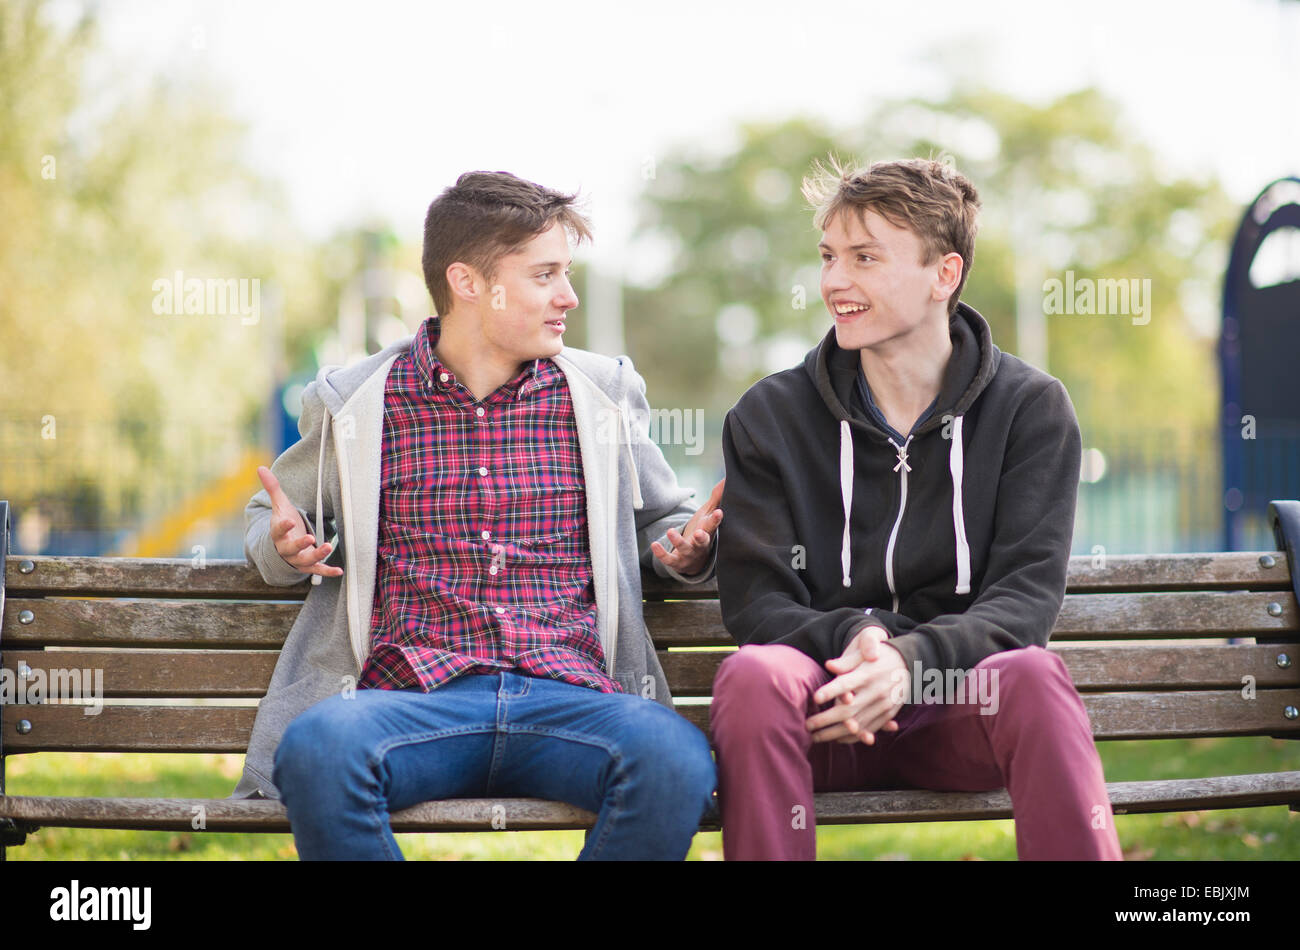 Dos hombres jóvenes amigos charlando en un banco del parque Foto de stock